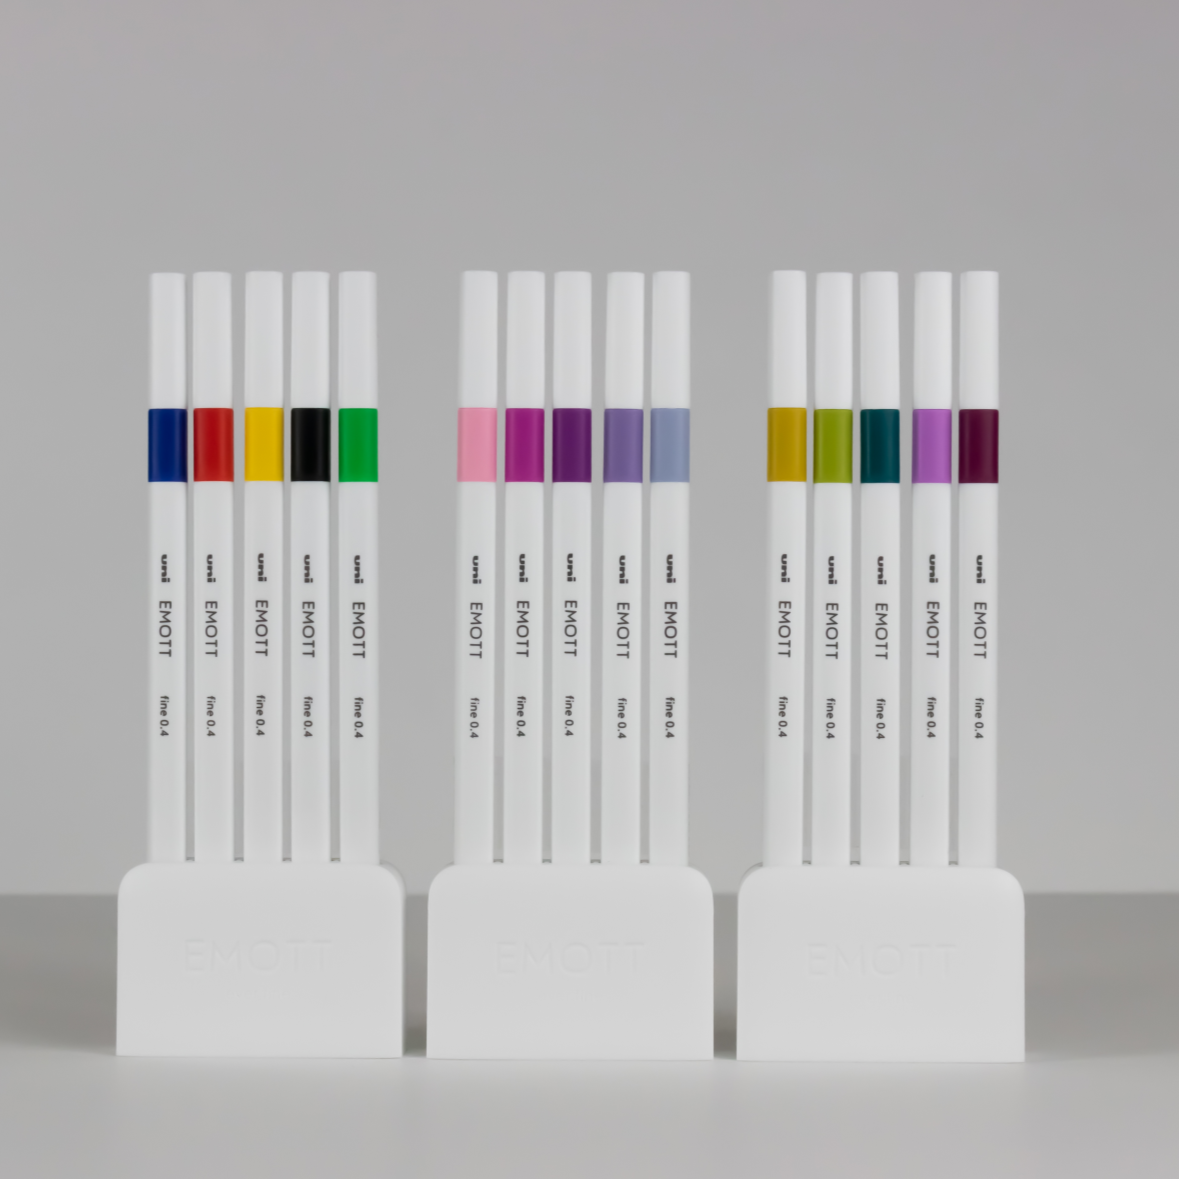 uni® EMOTT, Fineliner Marker Pens (5 Color Set)